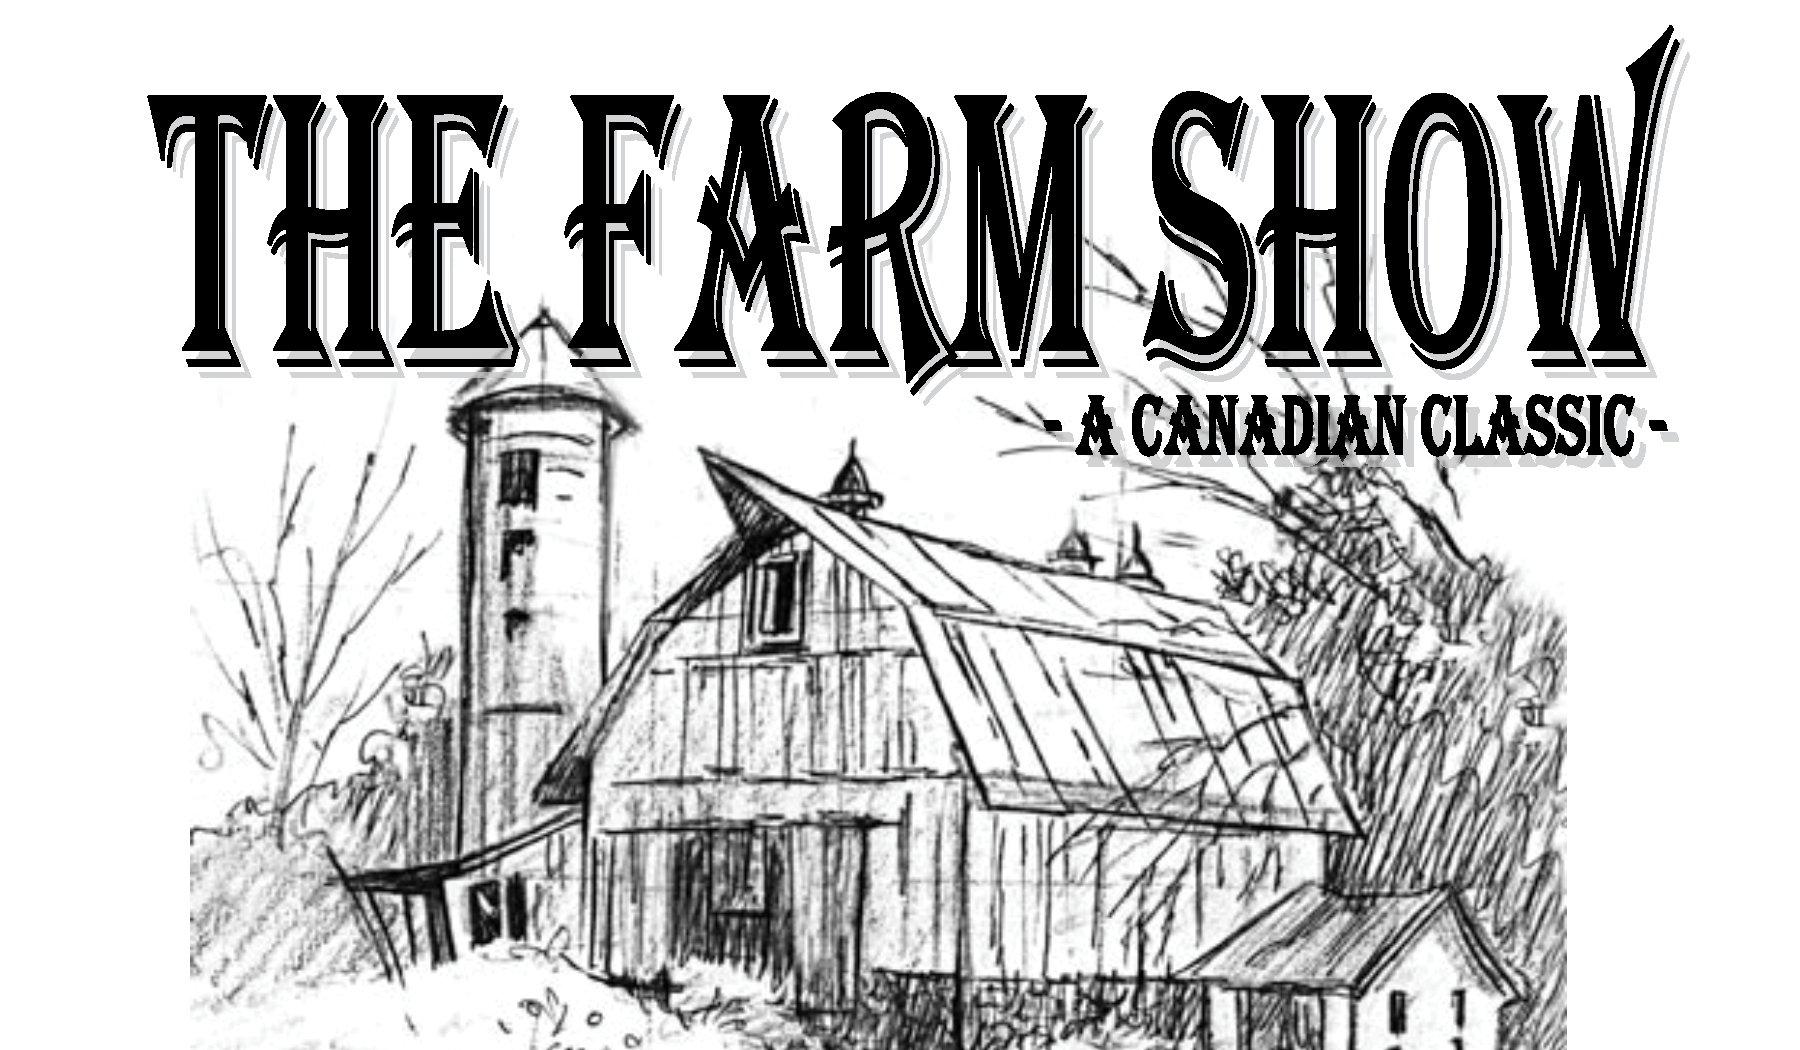 The Farm Show